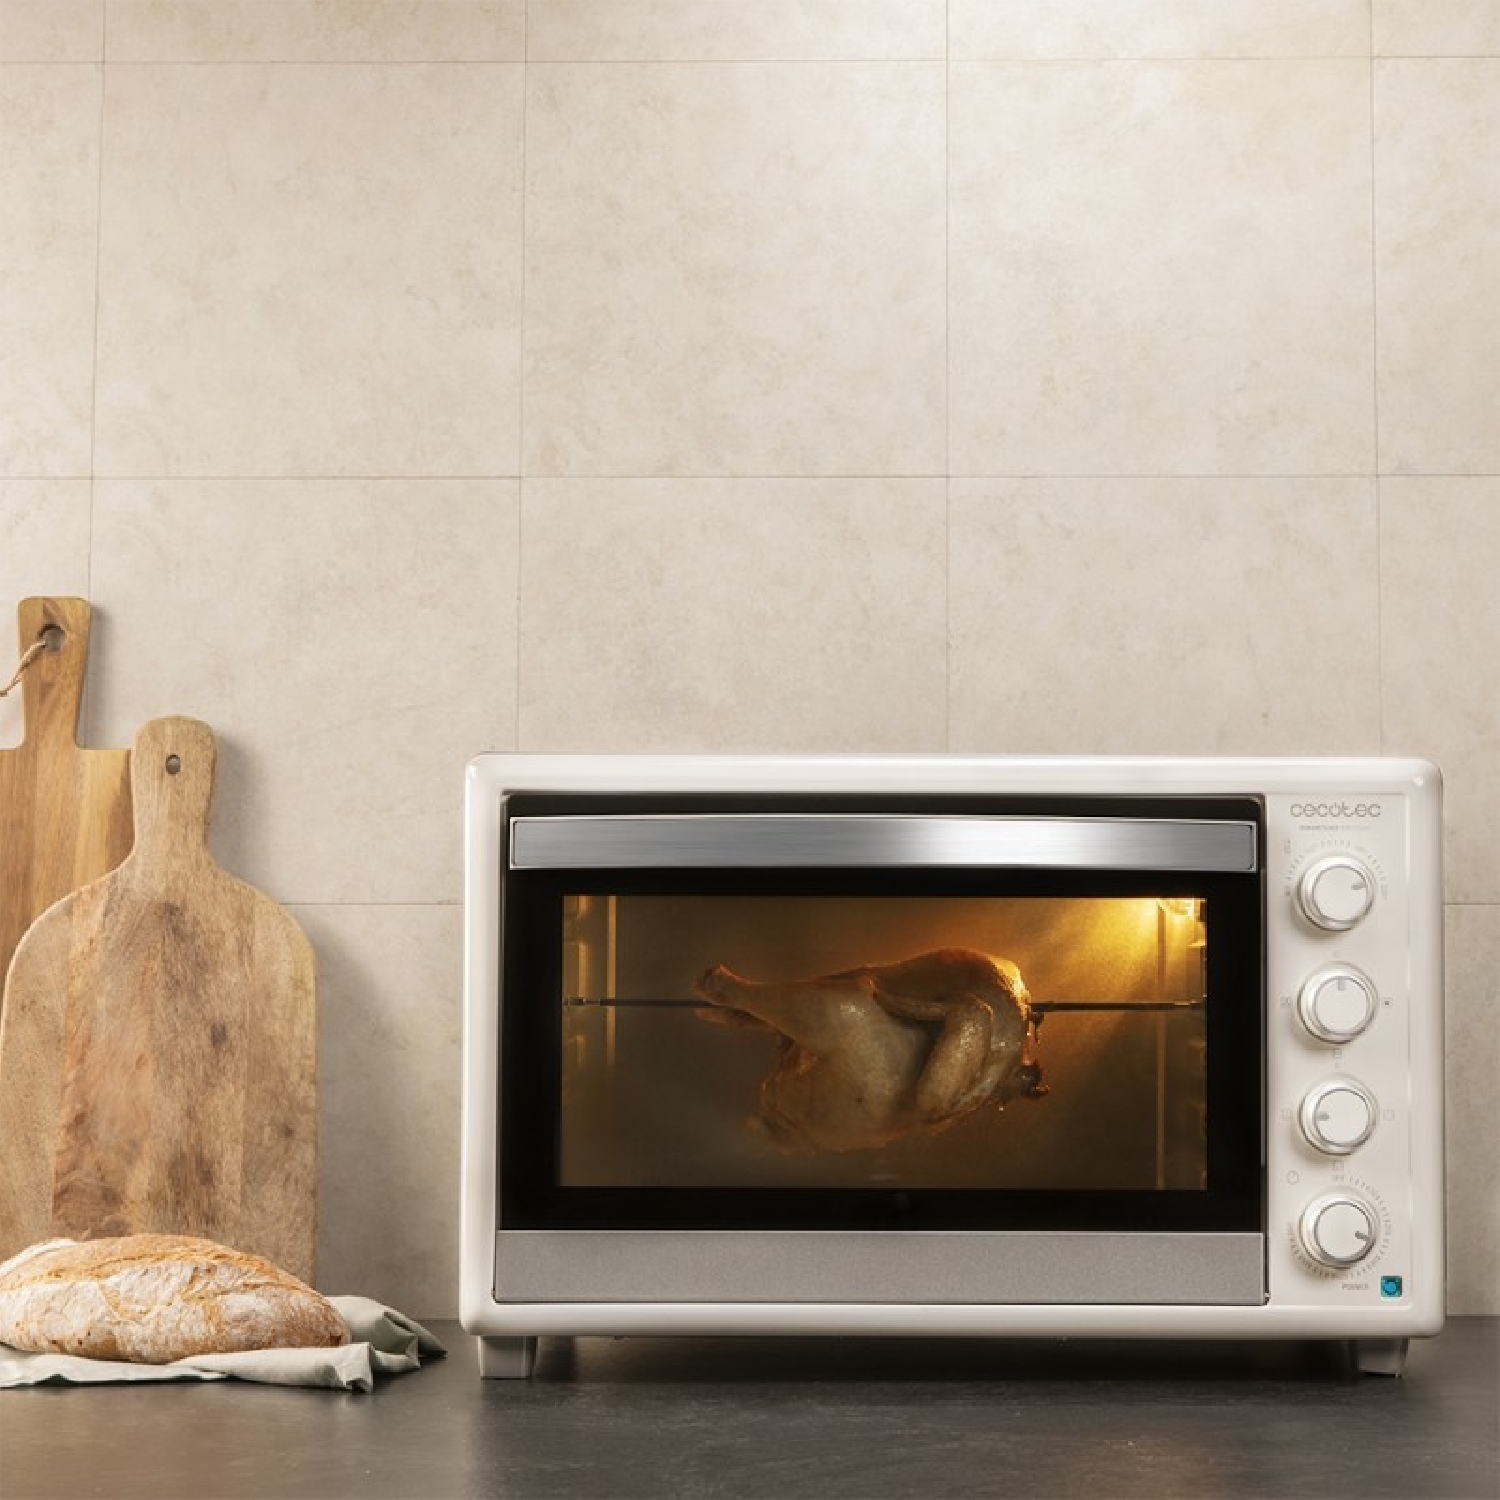 Weiß 890 CECOTEC Gyro Watt, Schlitze: (2200 Toaster 0) Bake&Toast